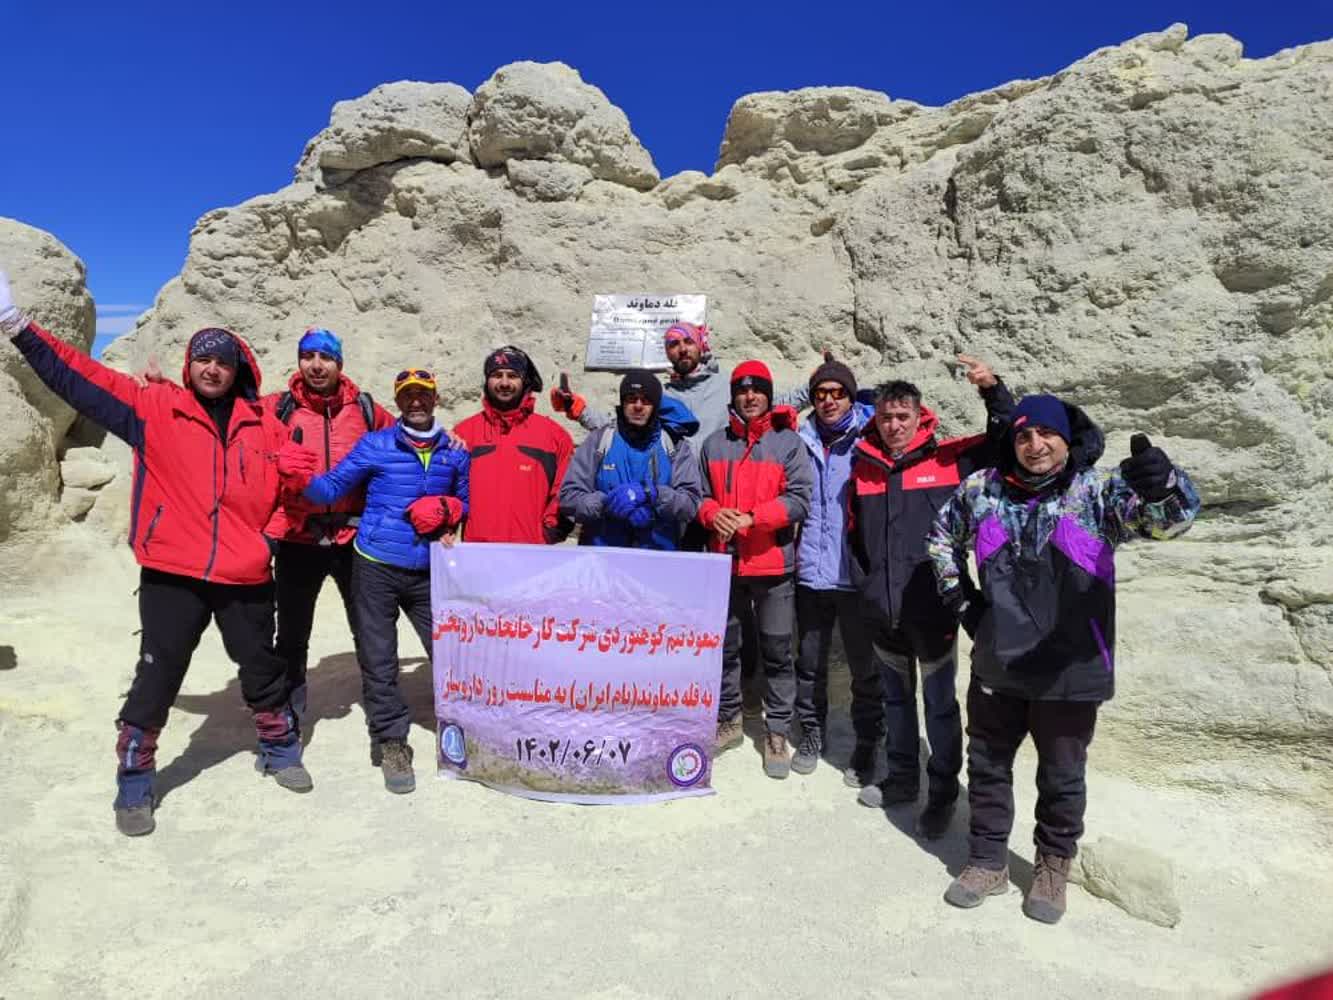 تیم کوهنوردی شرکت کارخانجات داروپخش به قله دماوند صعود کرد